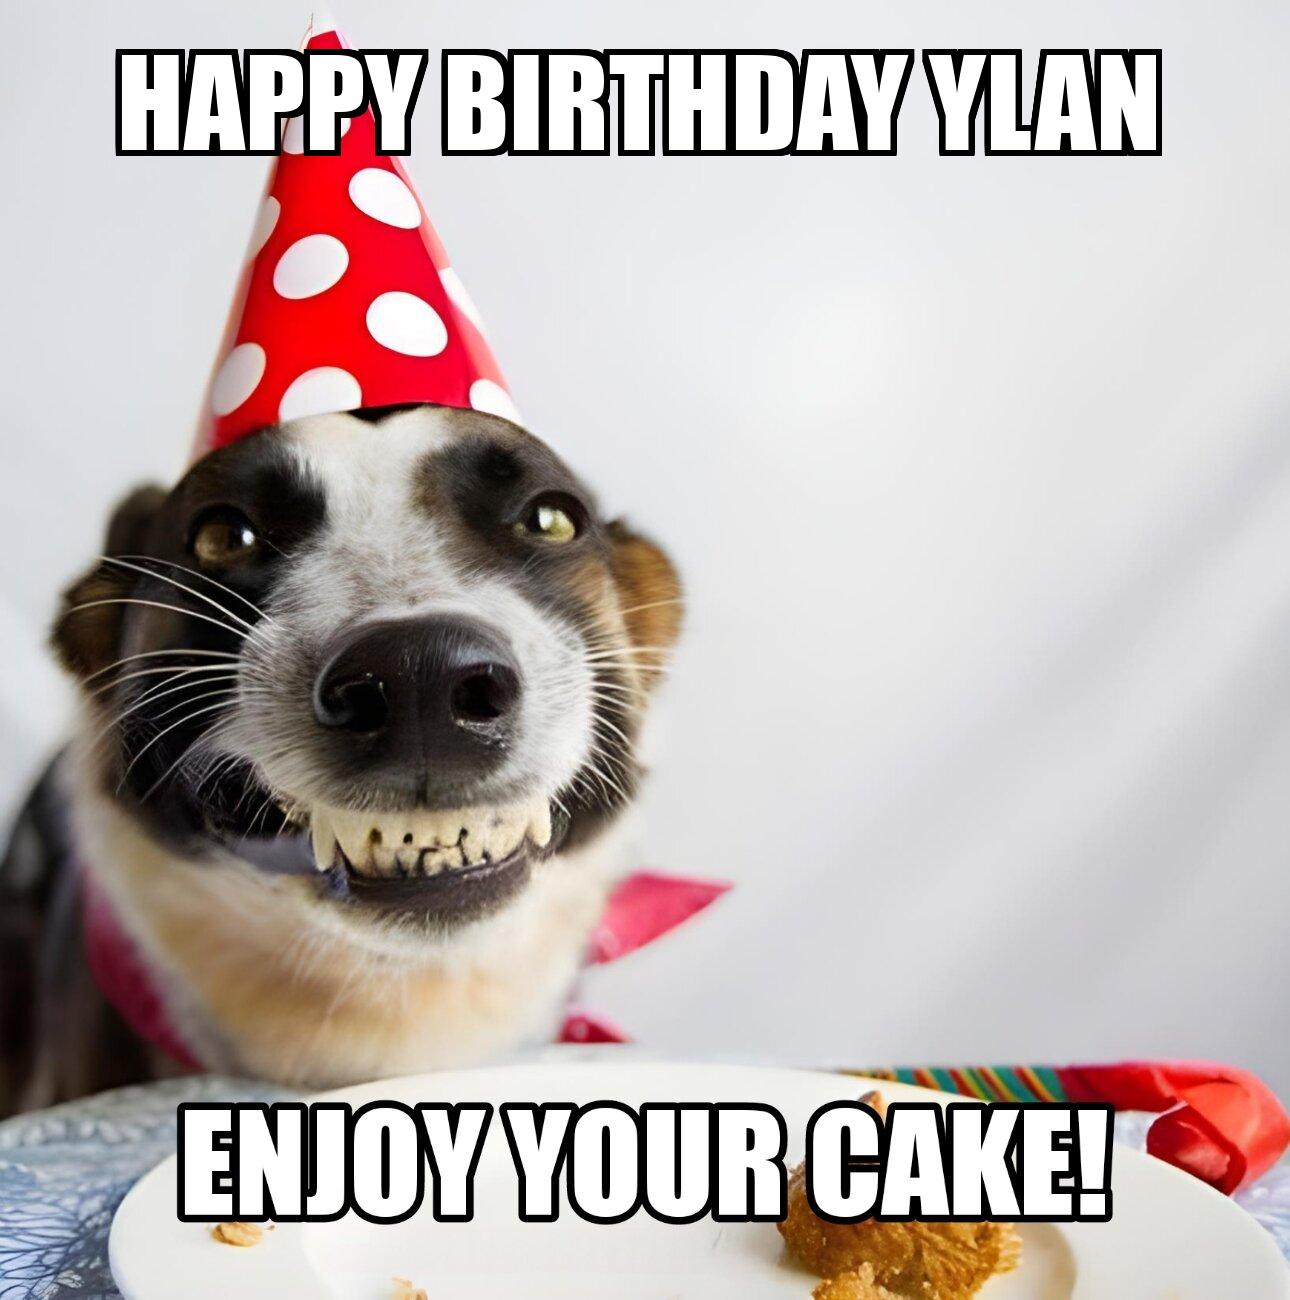 Happy Birthday Ylan Enjoy Your Cake Dog Meme